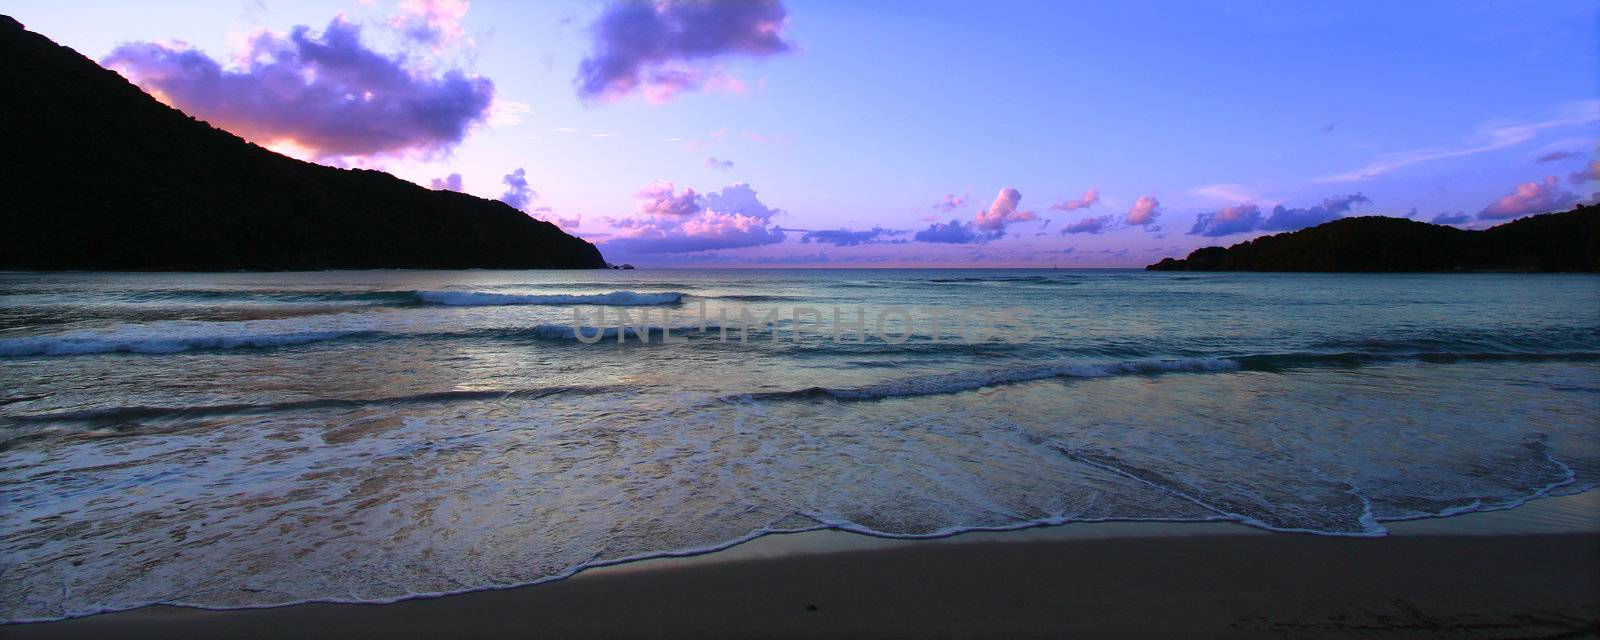 Tortola Panoramic Sunset by Wirepec